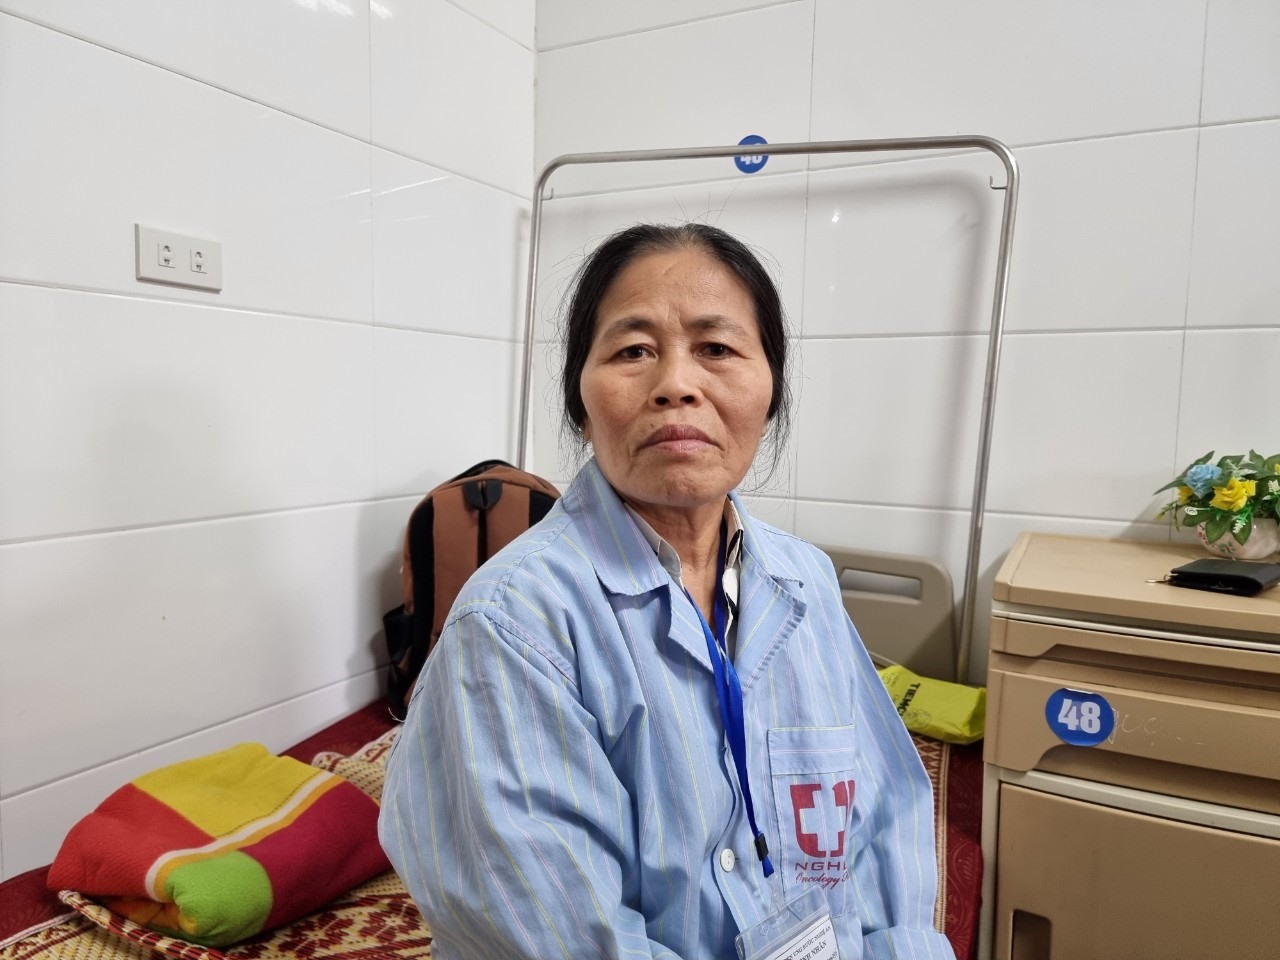 Bà Nguyễn Thị Xuân (60 tuổi), trú xã Long Sơn, huyện Anh Sơn phải điều trị nội trú do bị u tuyến giáp. Ảnh: Quang Đại